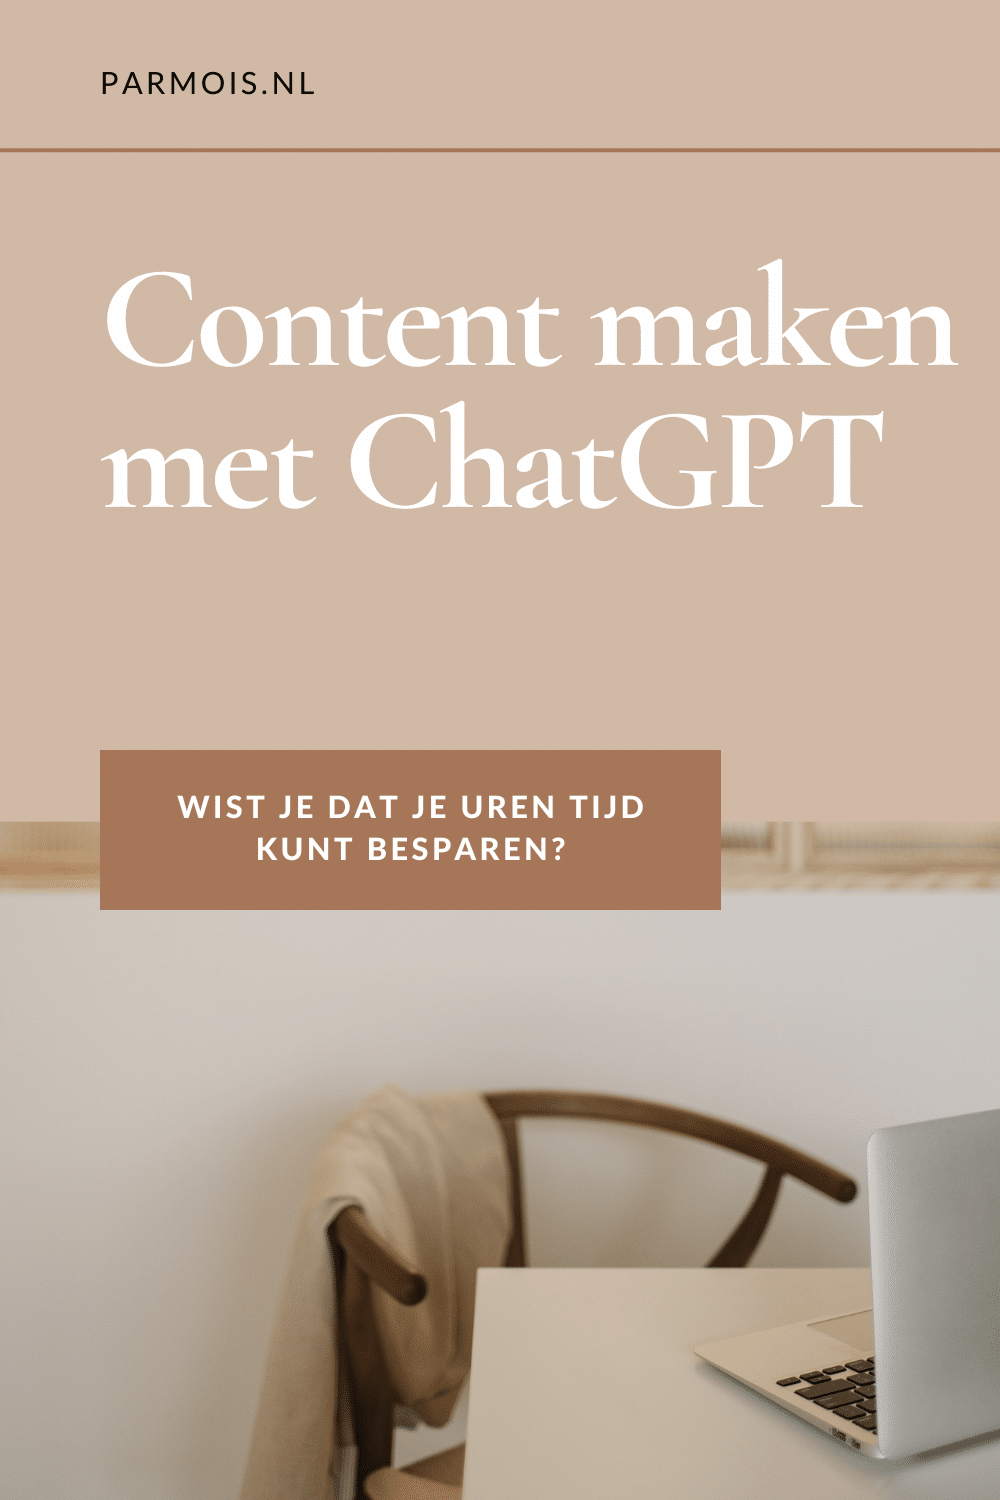 Content creatie en Chat GPT: bespaar uren tijd